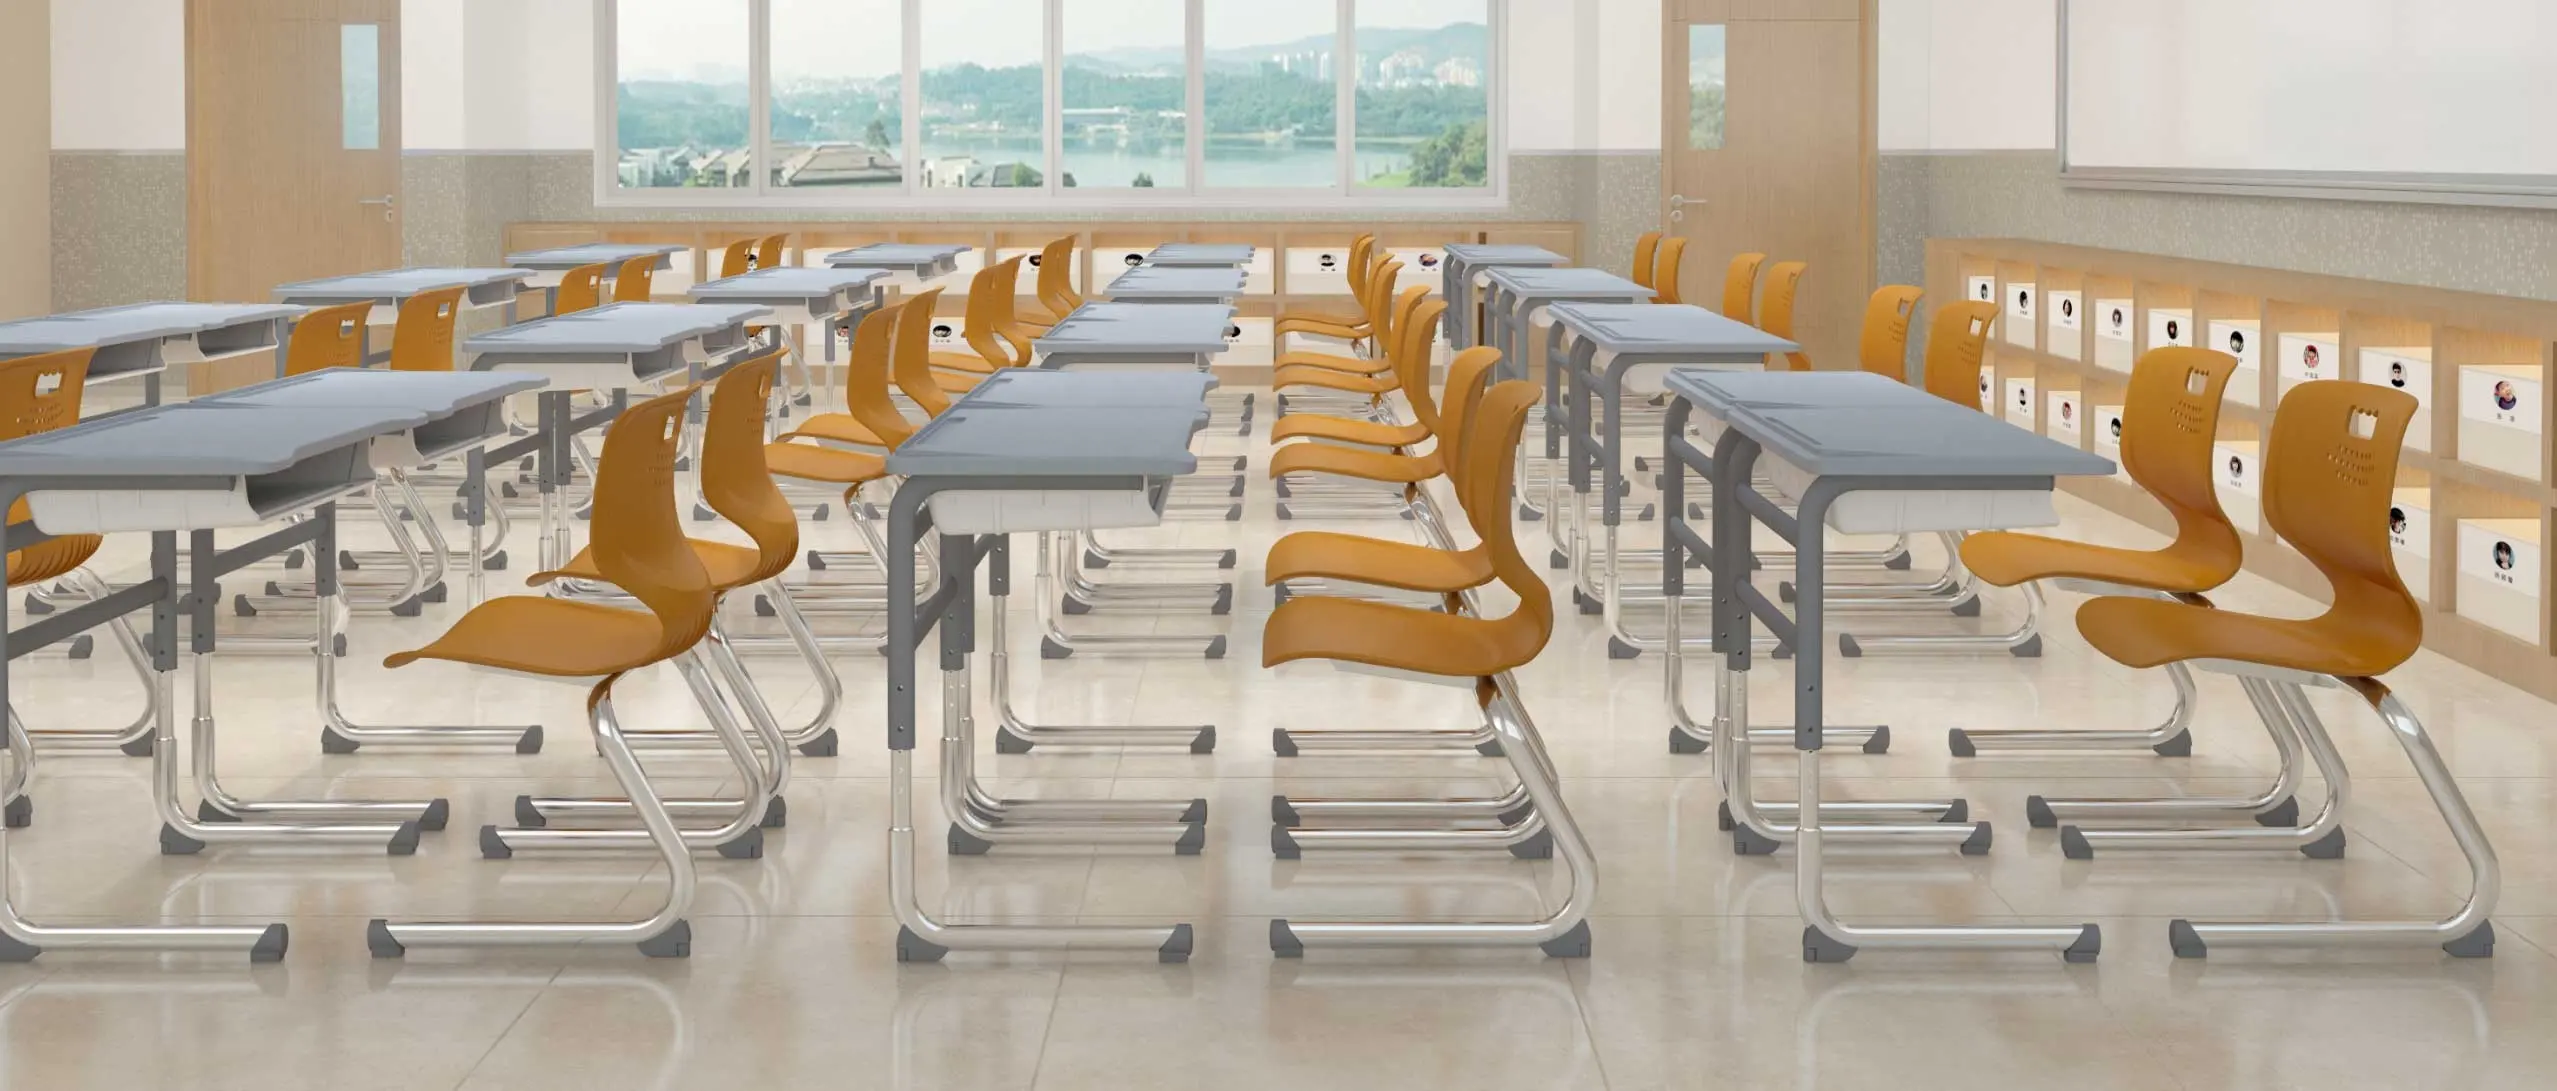 Öğrenci sırası ve sandalye okul mobilyaları yüksek kaliteli Modern öğrenci sırası sandalye seti